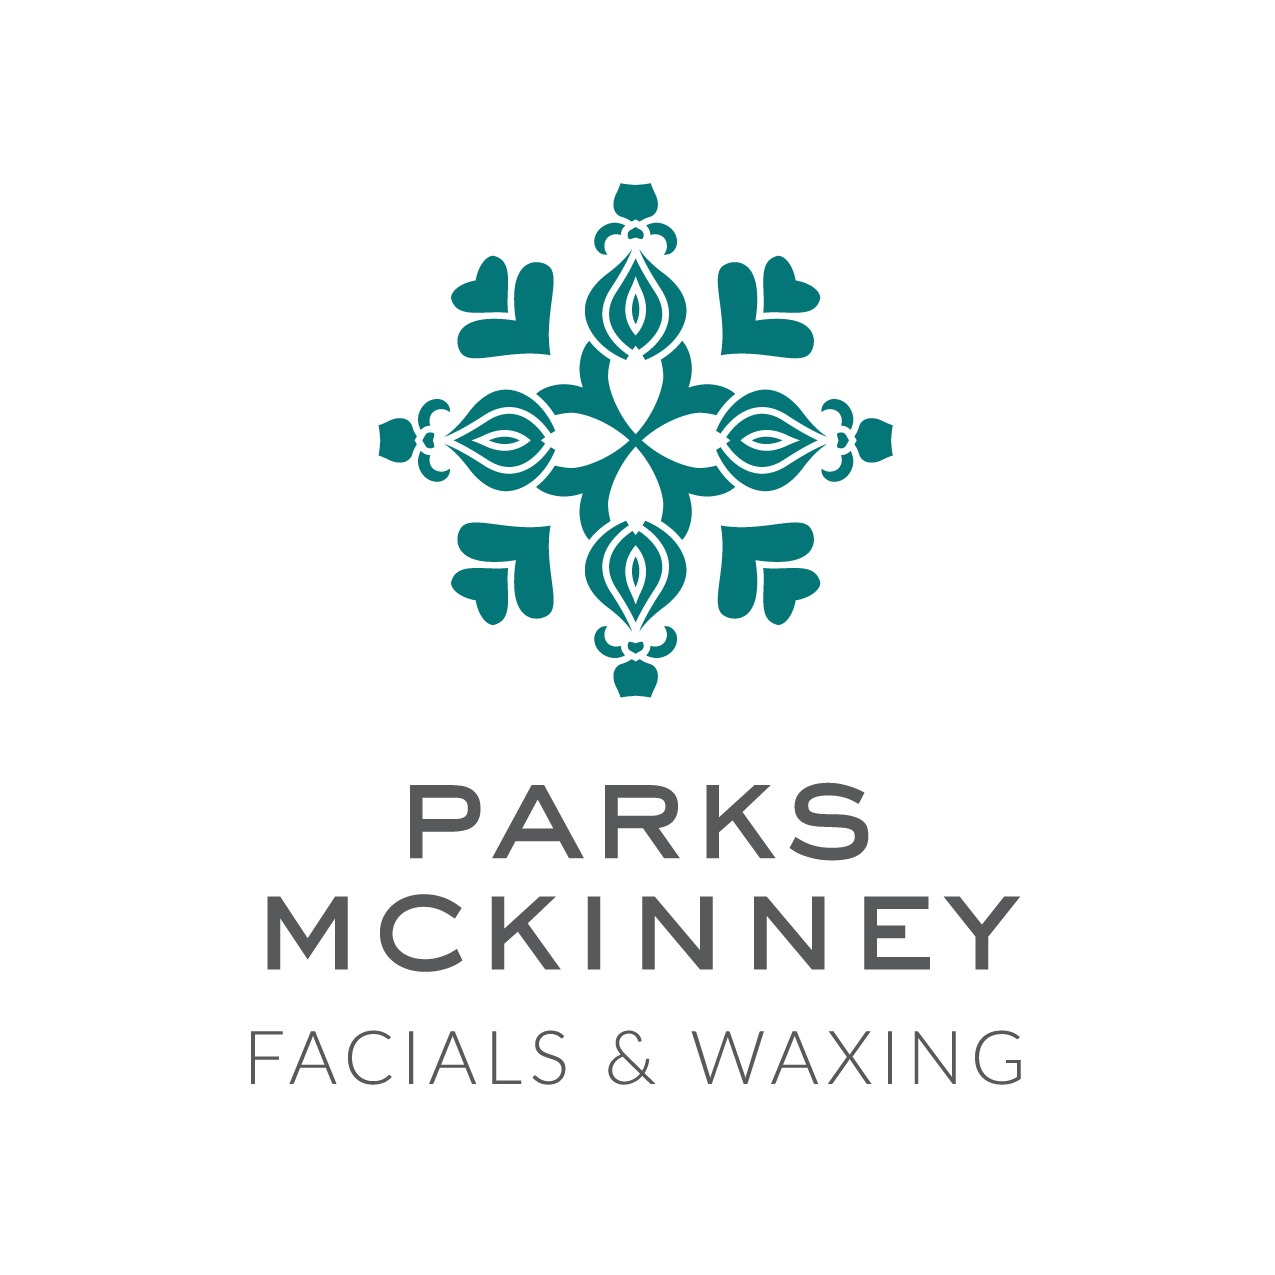 Parks McKinney Facials & Waxing